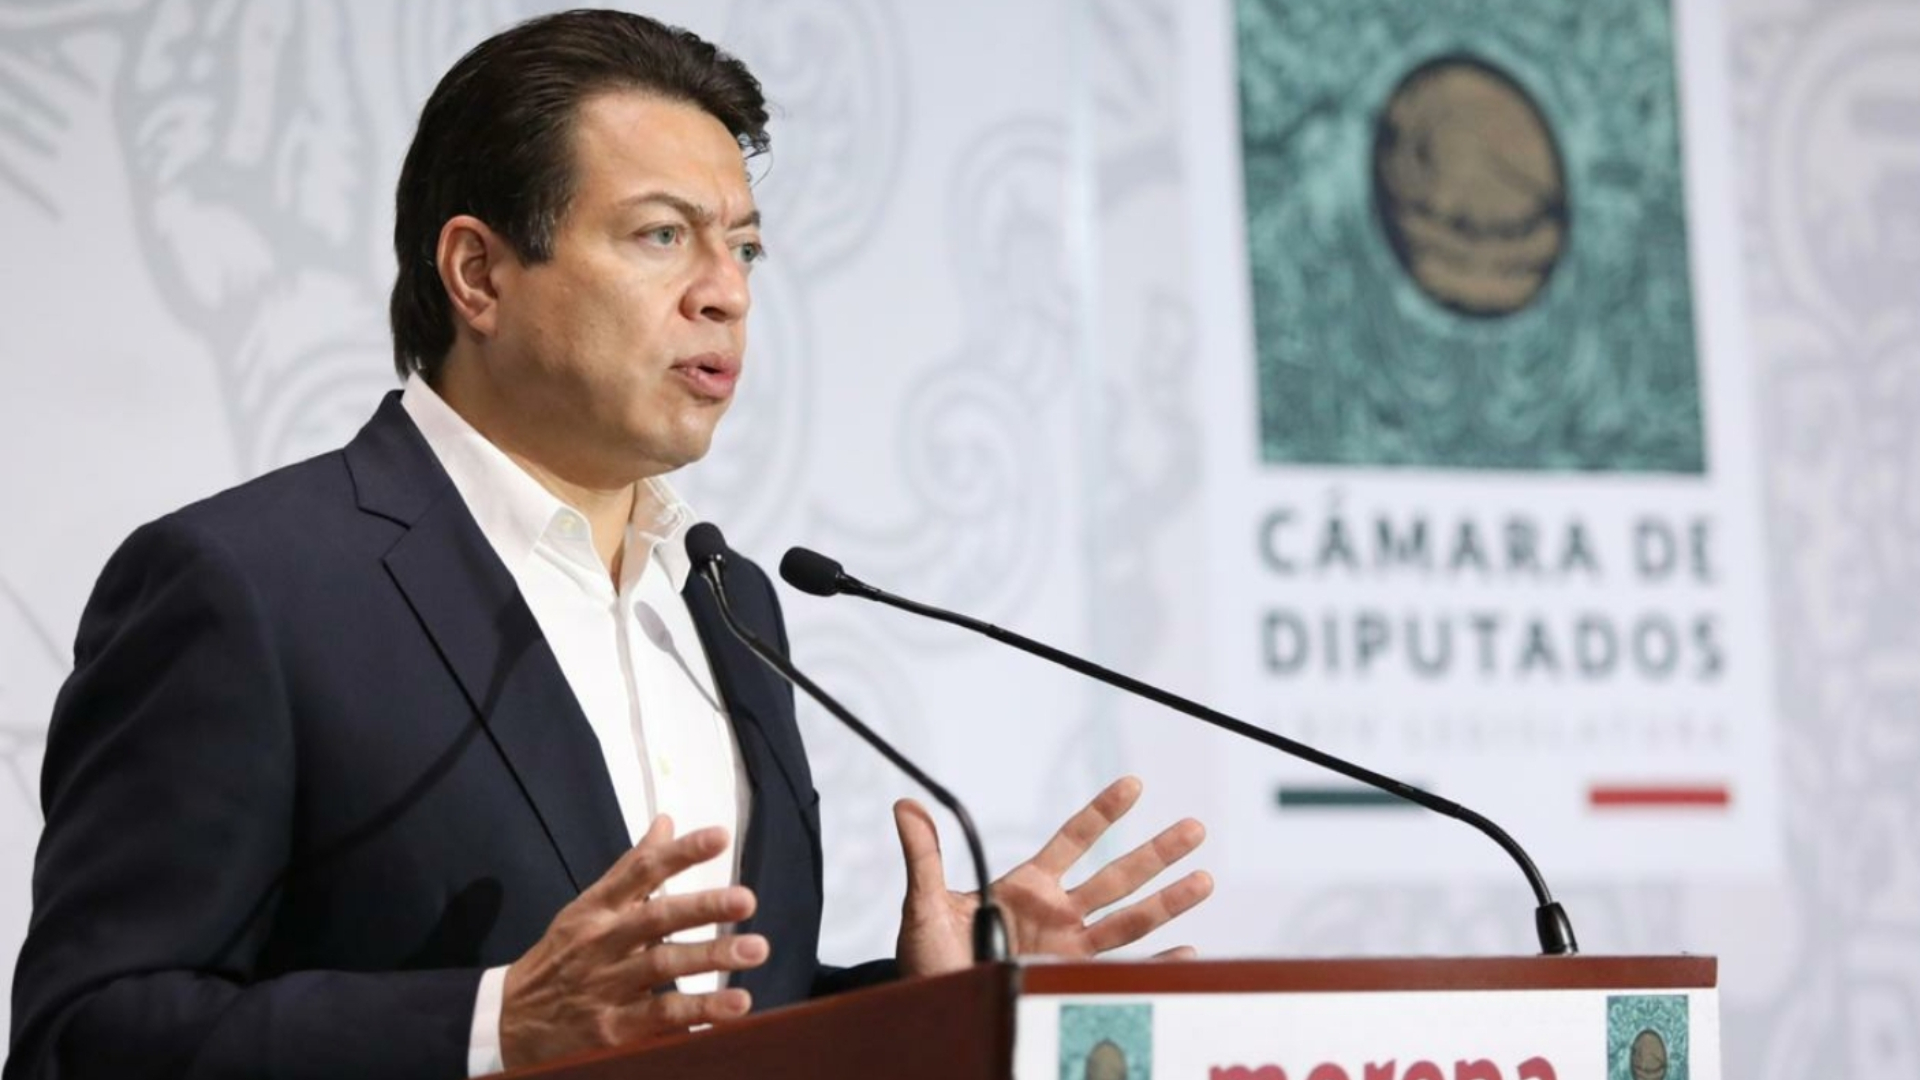 Mario Delgado dijo que Hacienda determinaría qué recursos irían al gobierno (Foto: mariocd.mx)